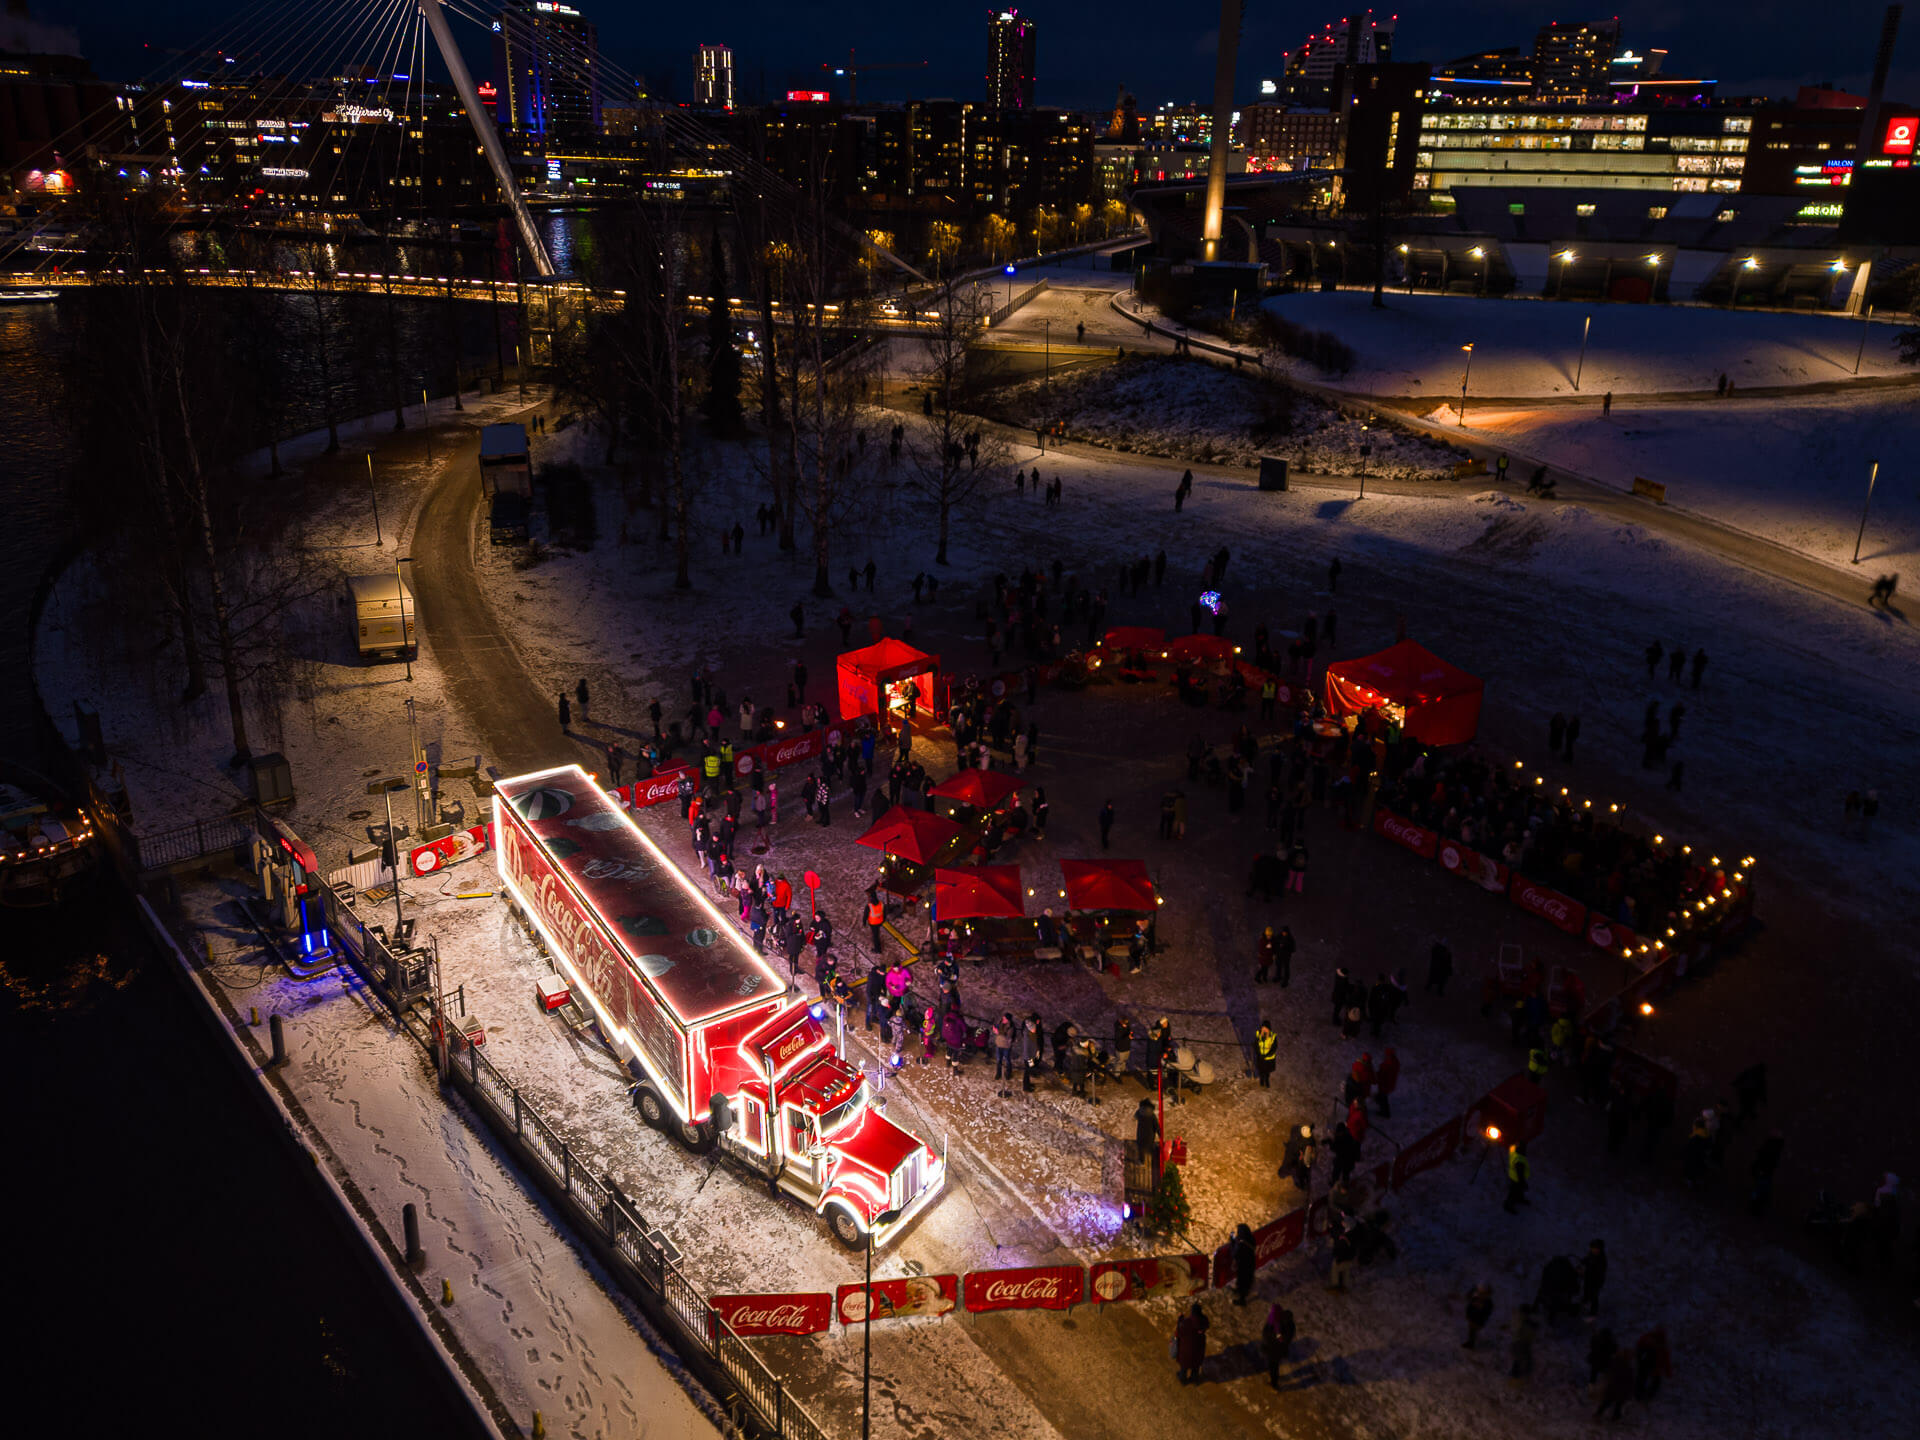 Coca-Cola-joulurekka Ratinanniemessä Tampereella